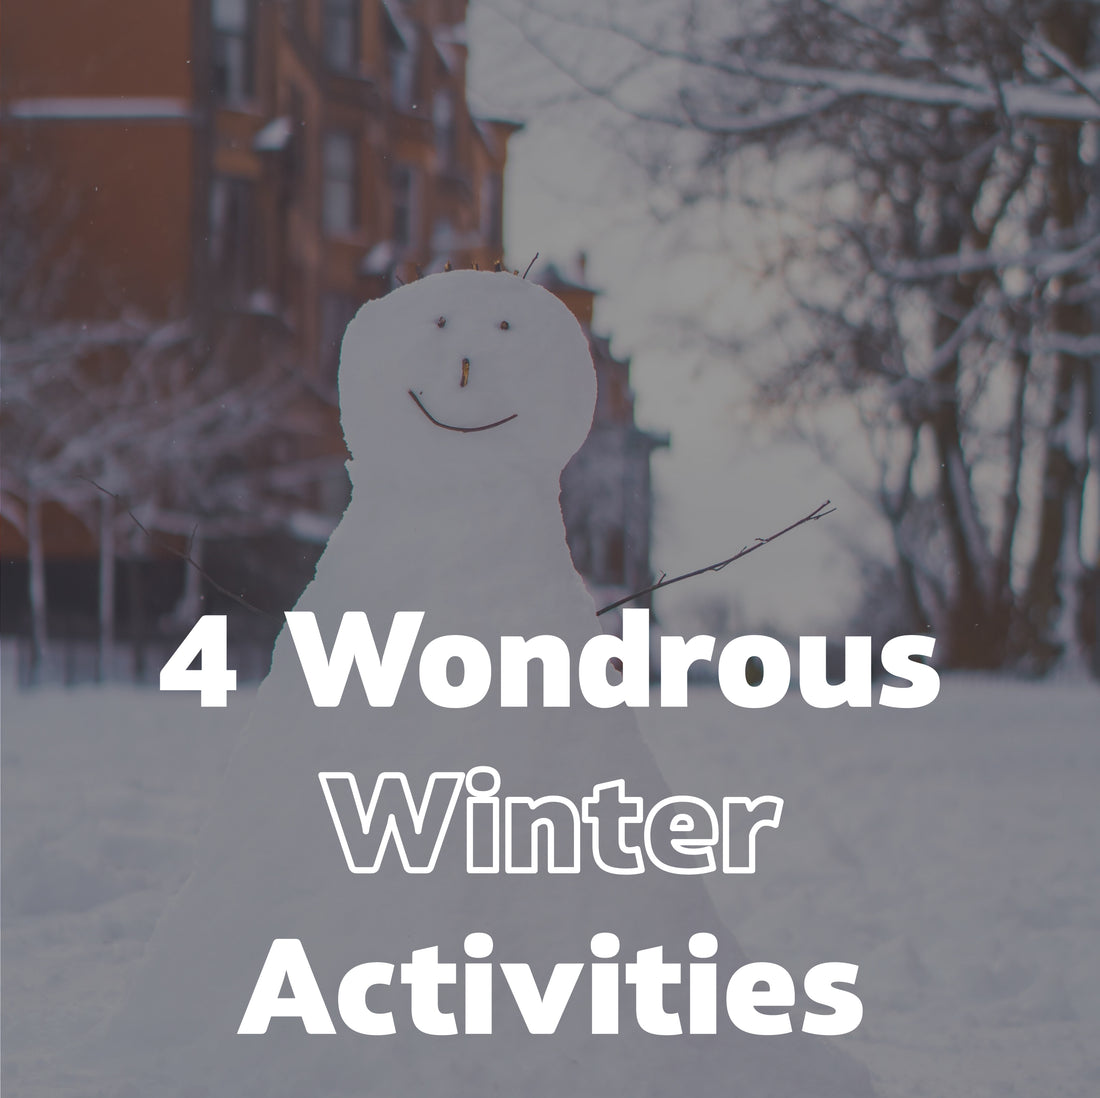 4 Wondrous Winter Activities